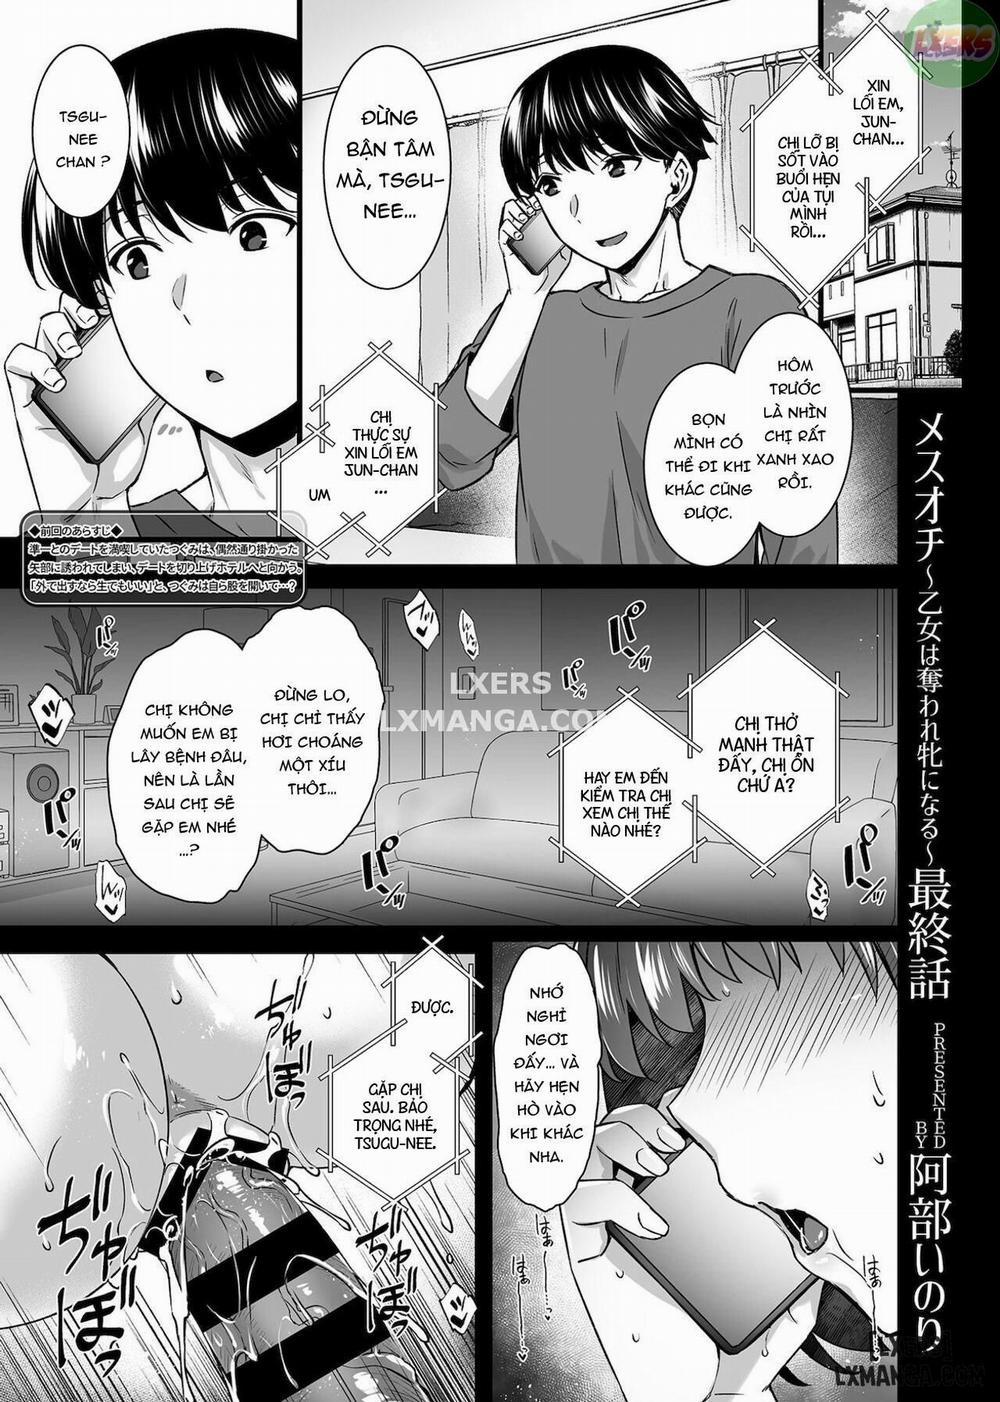 Mesuochi ~Otome wa Ubaware Mesu ni Naru Chương 4 END Trang 2